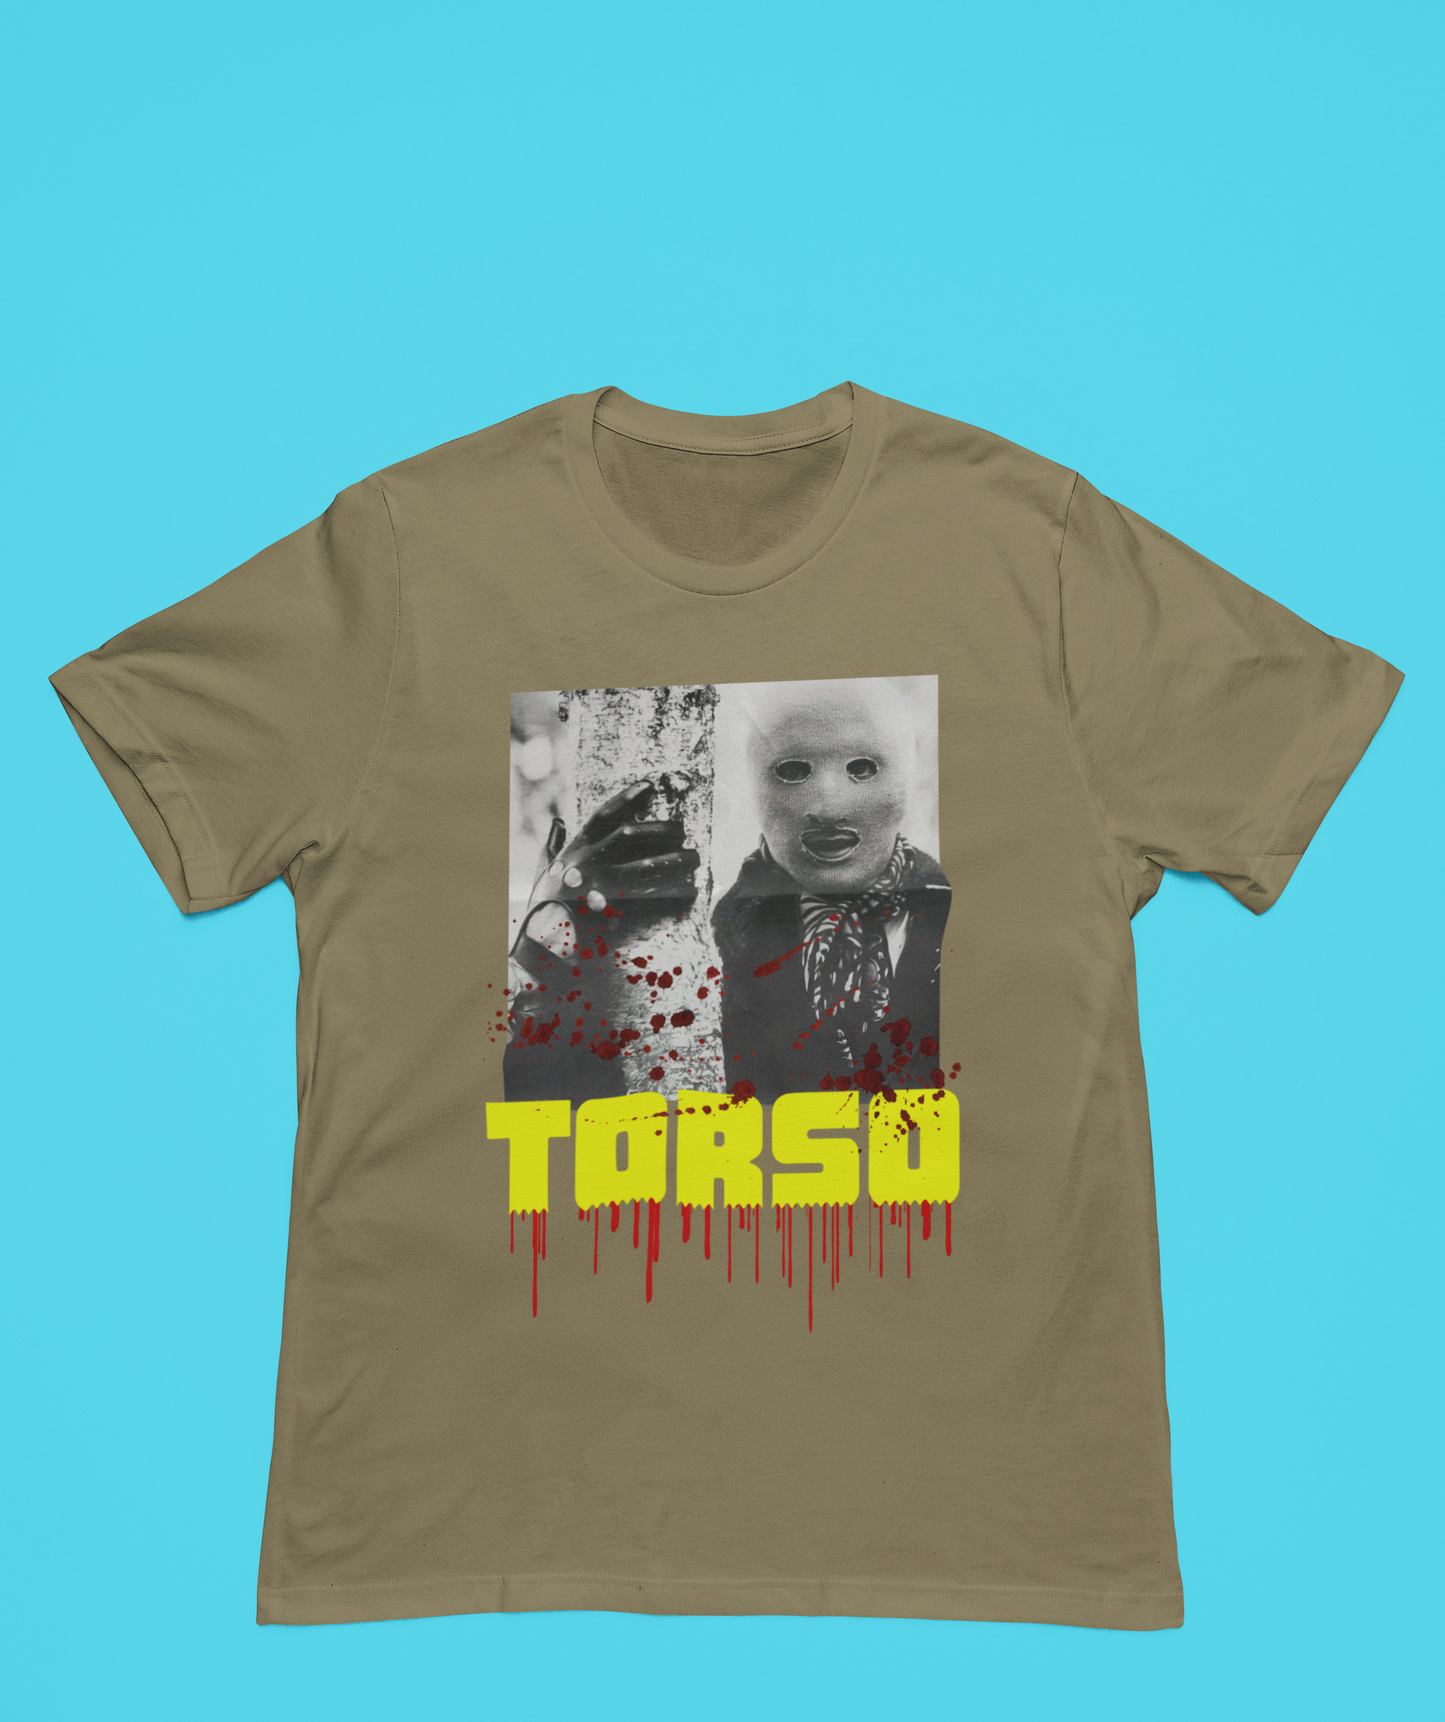 TORSO! TORSO! TORSO! T-Shirt